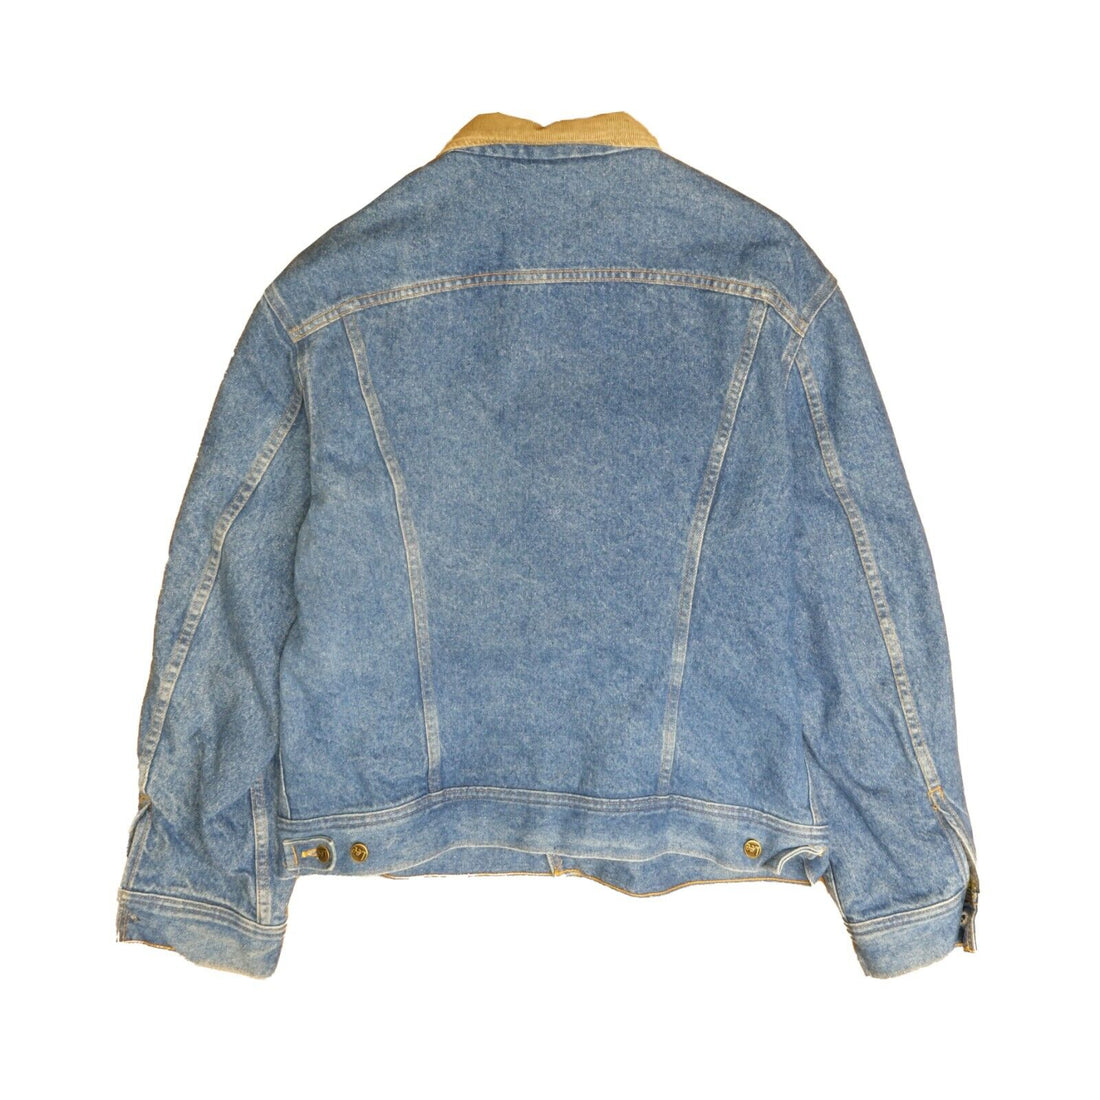 Vintage Lee Storm Rider Denim Jean Trucker Jacket Size 46 Blue Blanket Lined 60s